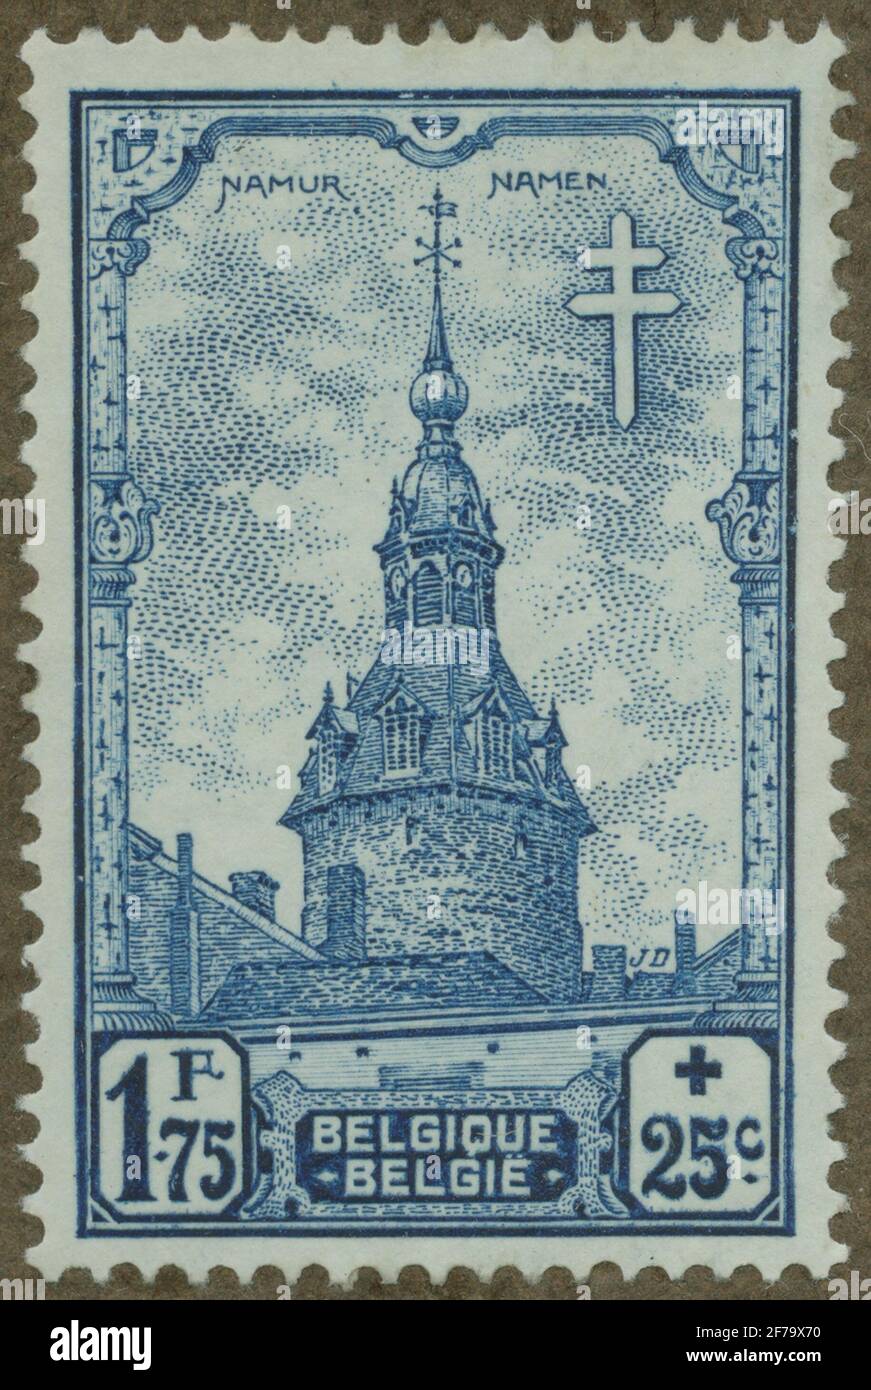 Francobollo della collezione filatelica di Gösta Bodman, iniziato nel 1950. Il francobollo dal Belgio, 1939. Motivi della chiesa di Namur. "Serie tuberculosis". Foto Stock